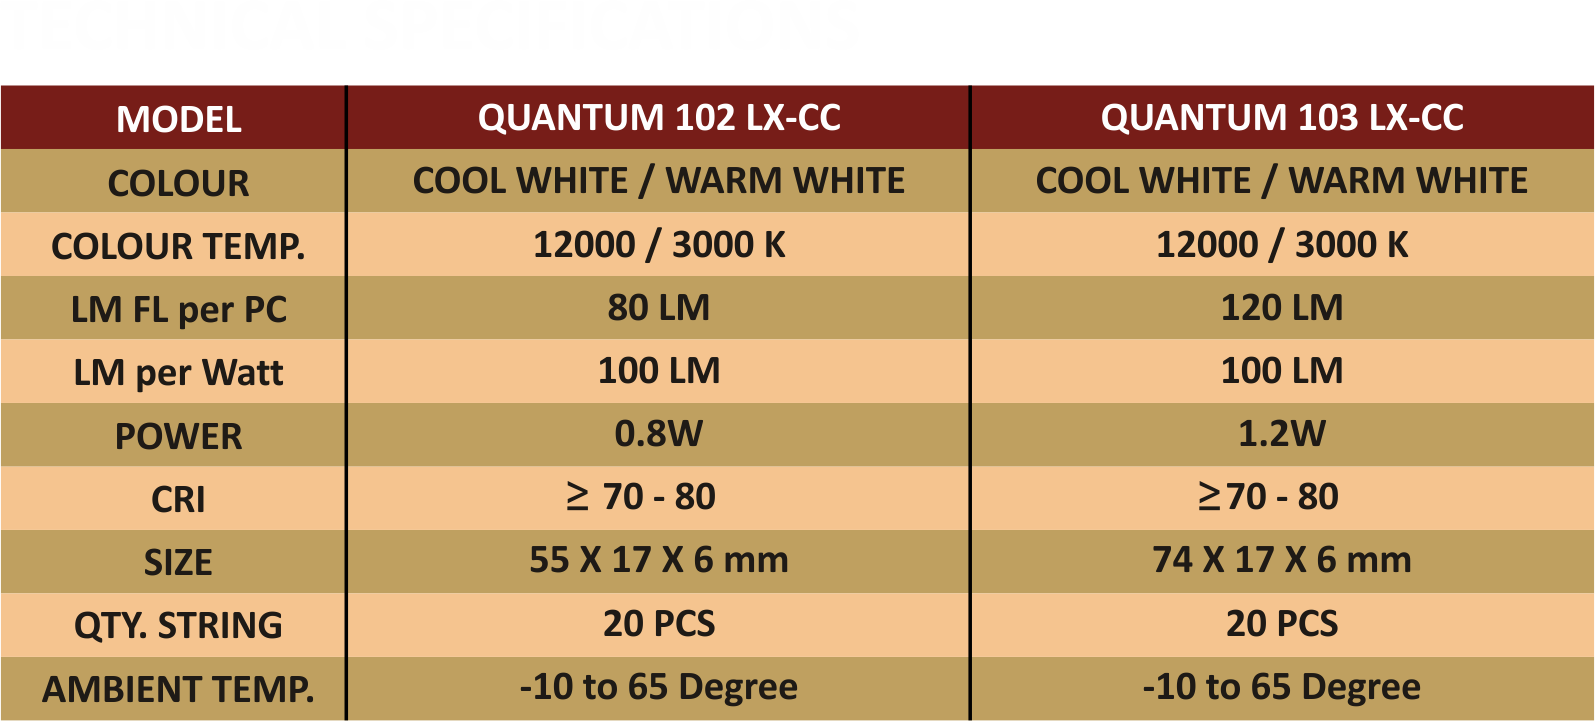 Specification/Features of Quantum